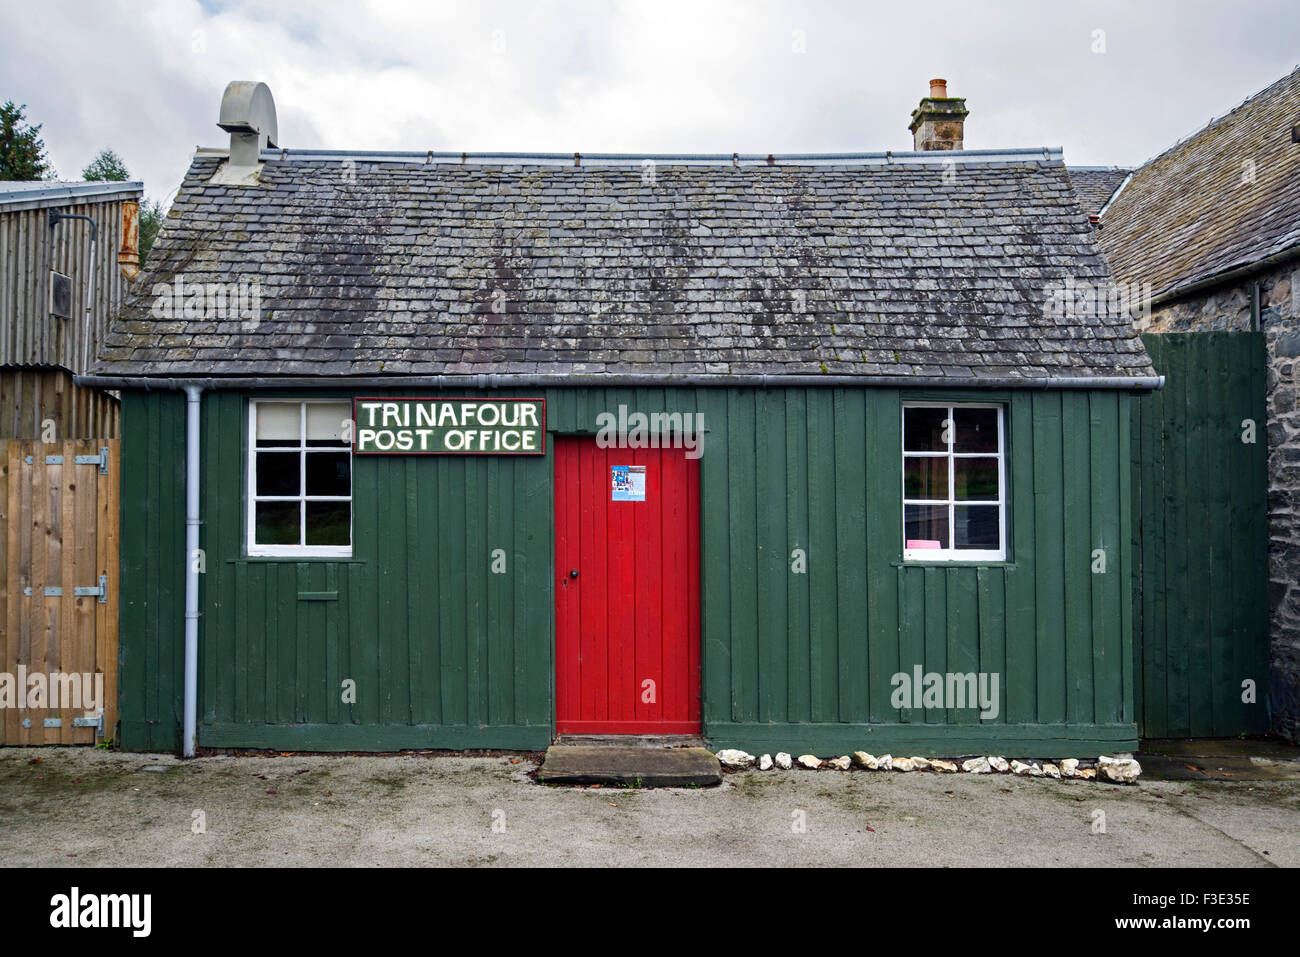 Oficina de Correos Trinafour, parte de Atholl Country Life Museum, en el pueblo de Blair Atholl, Perthshire, Escocia. Foto de stock